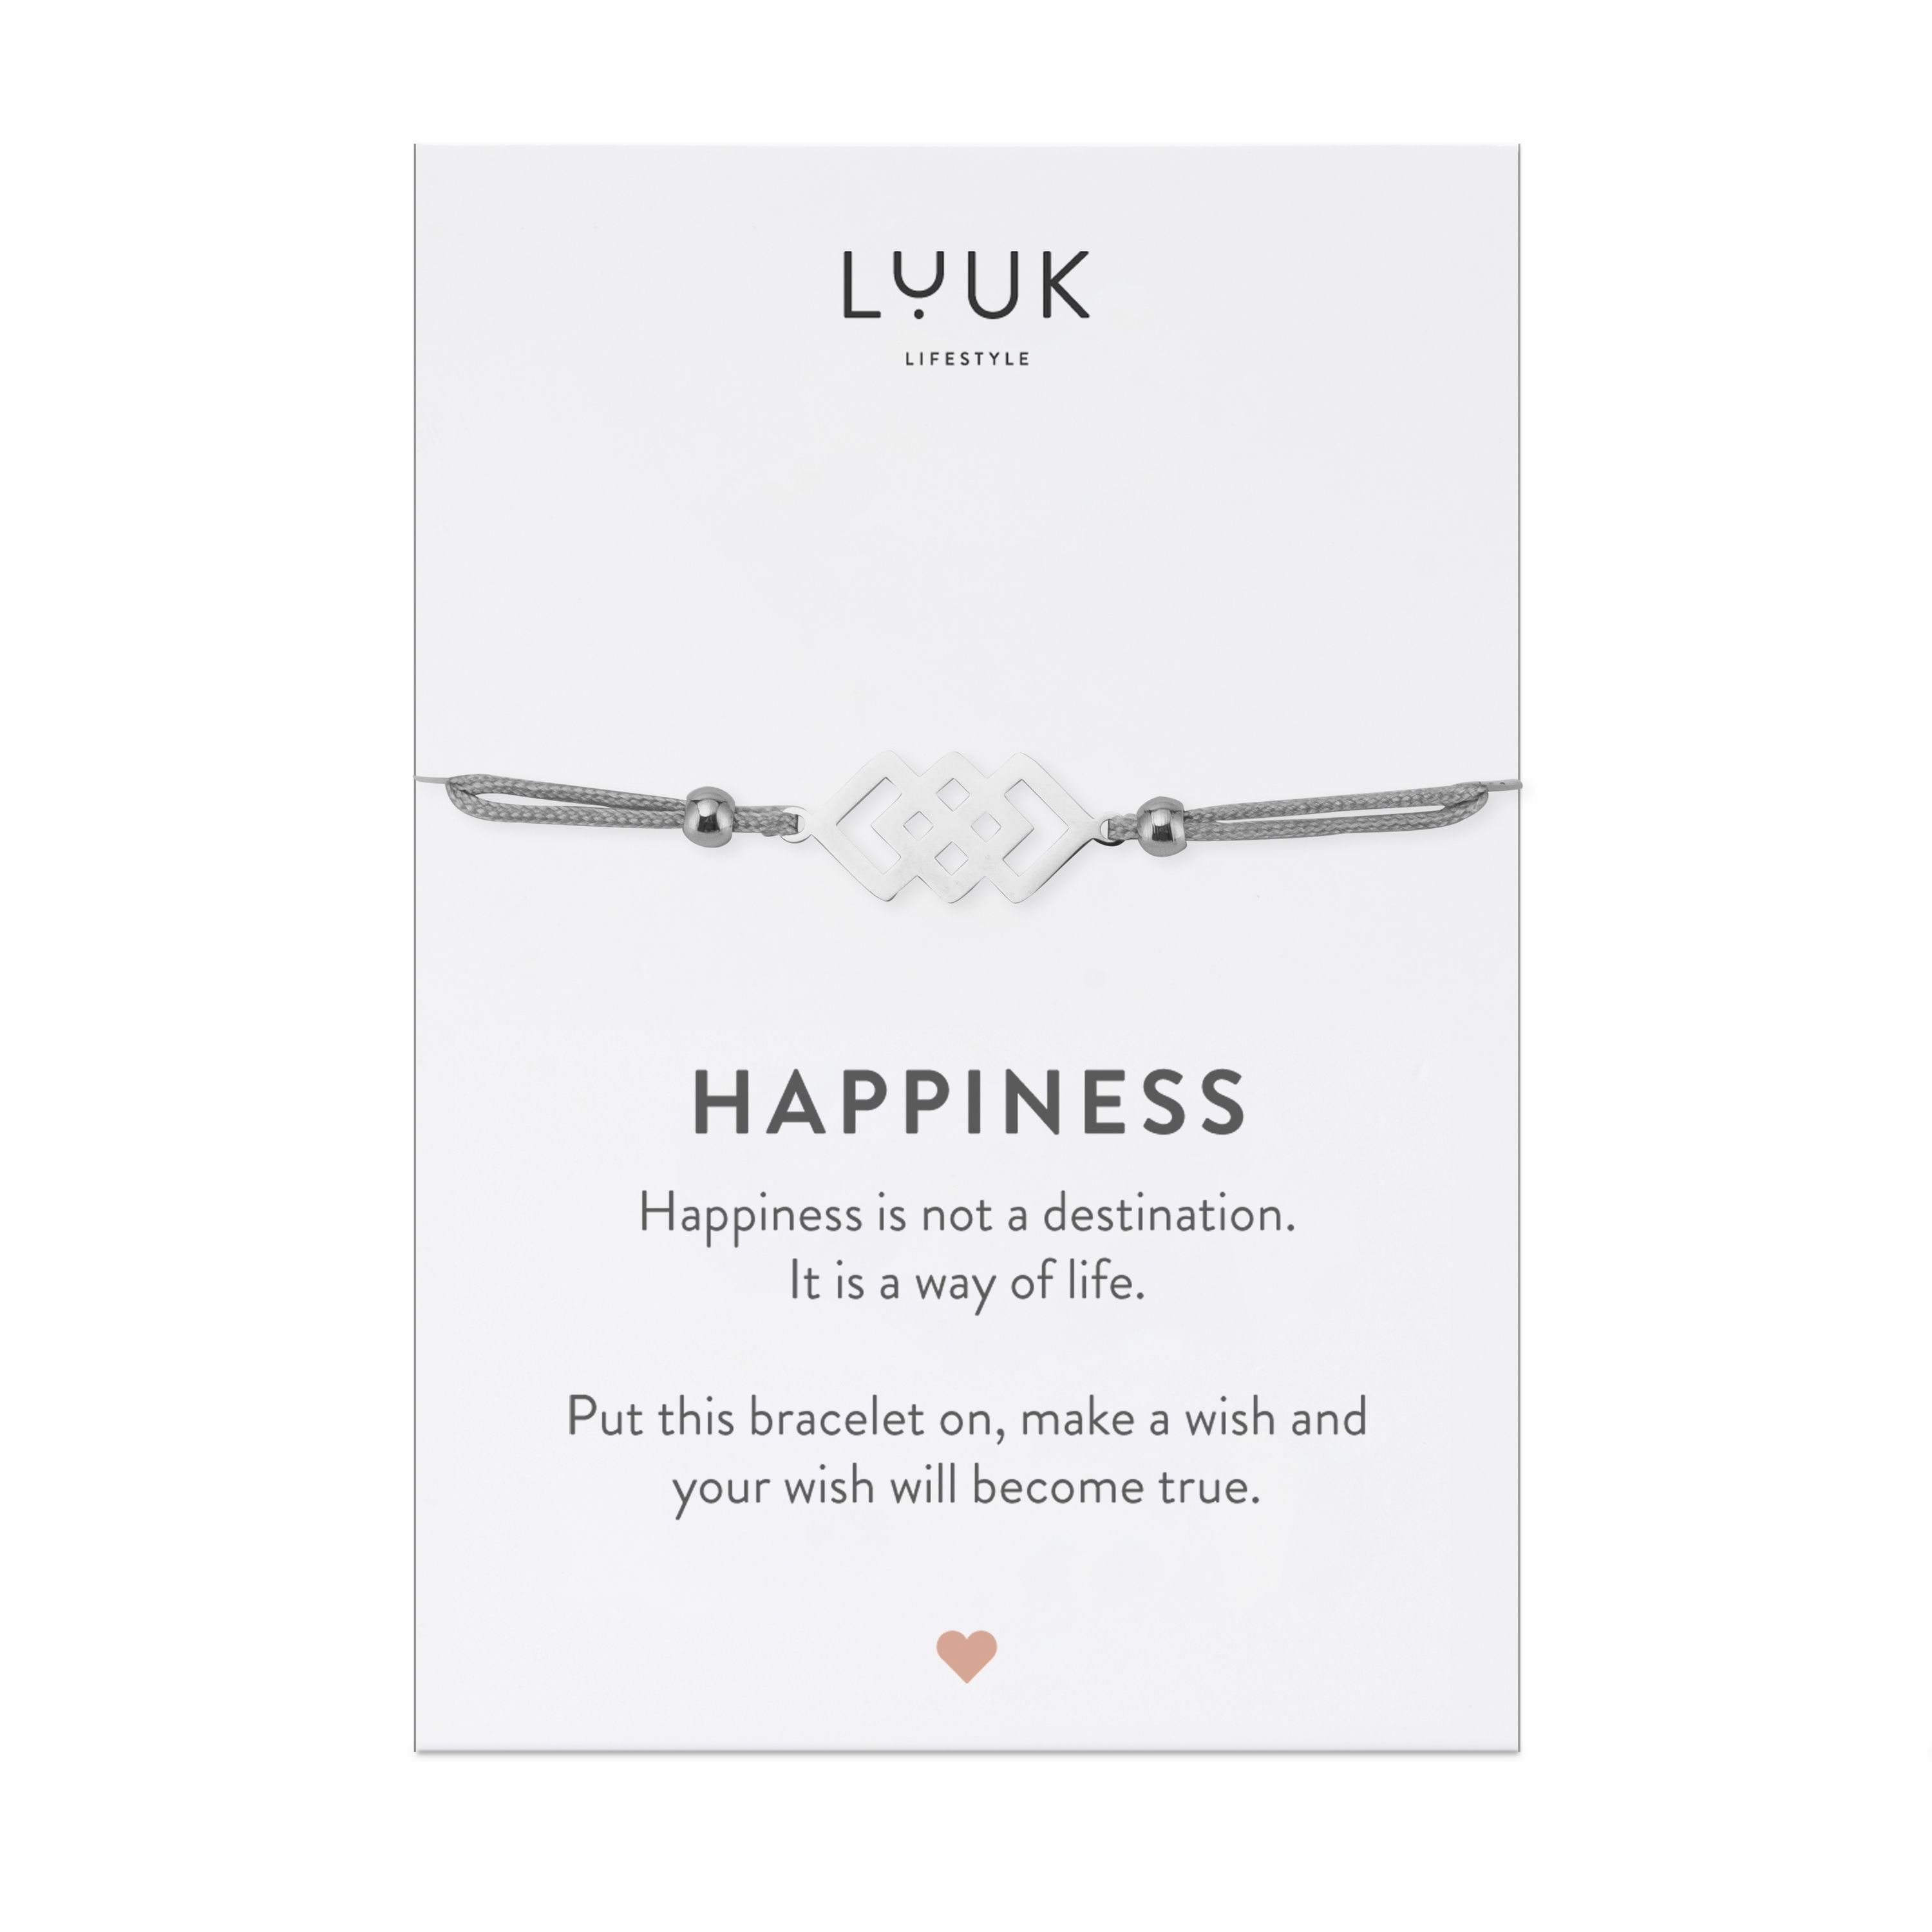 LUUK LIFESTYLE Freundschaftsarmband verschlungene Quadrate, handmade, mit Happiness Spruchkarte